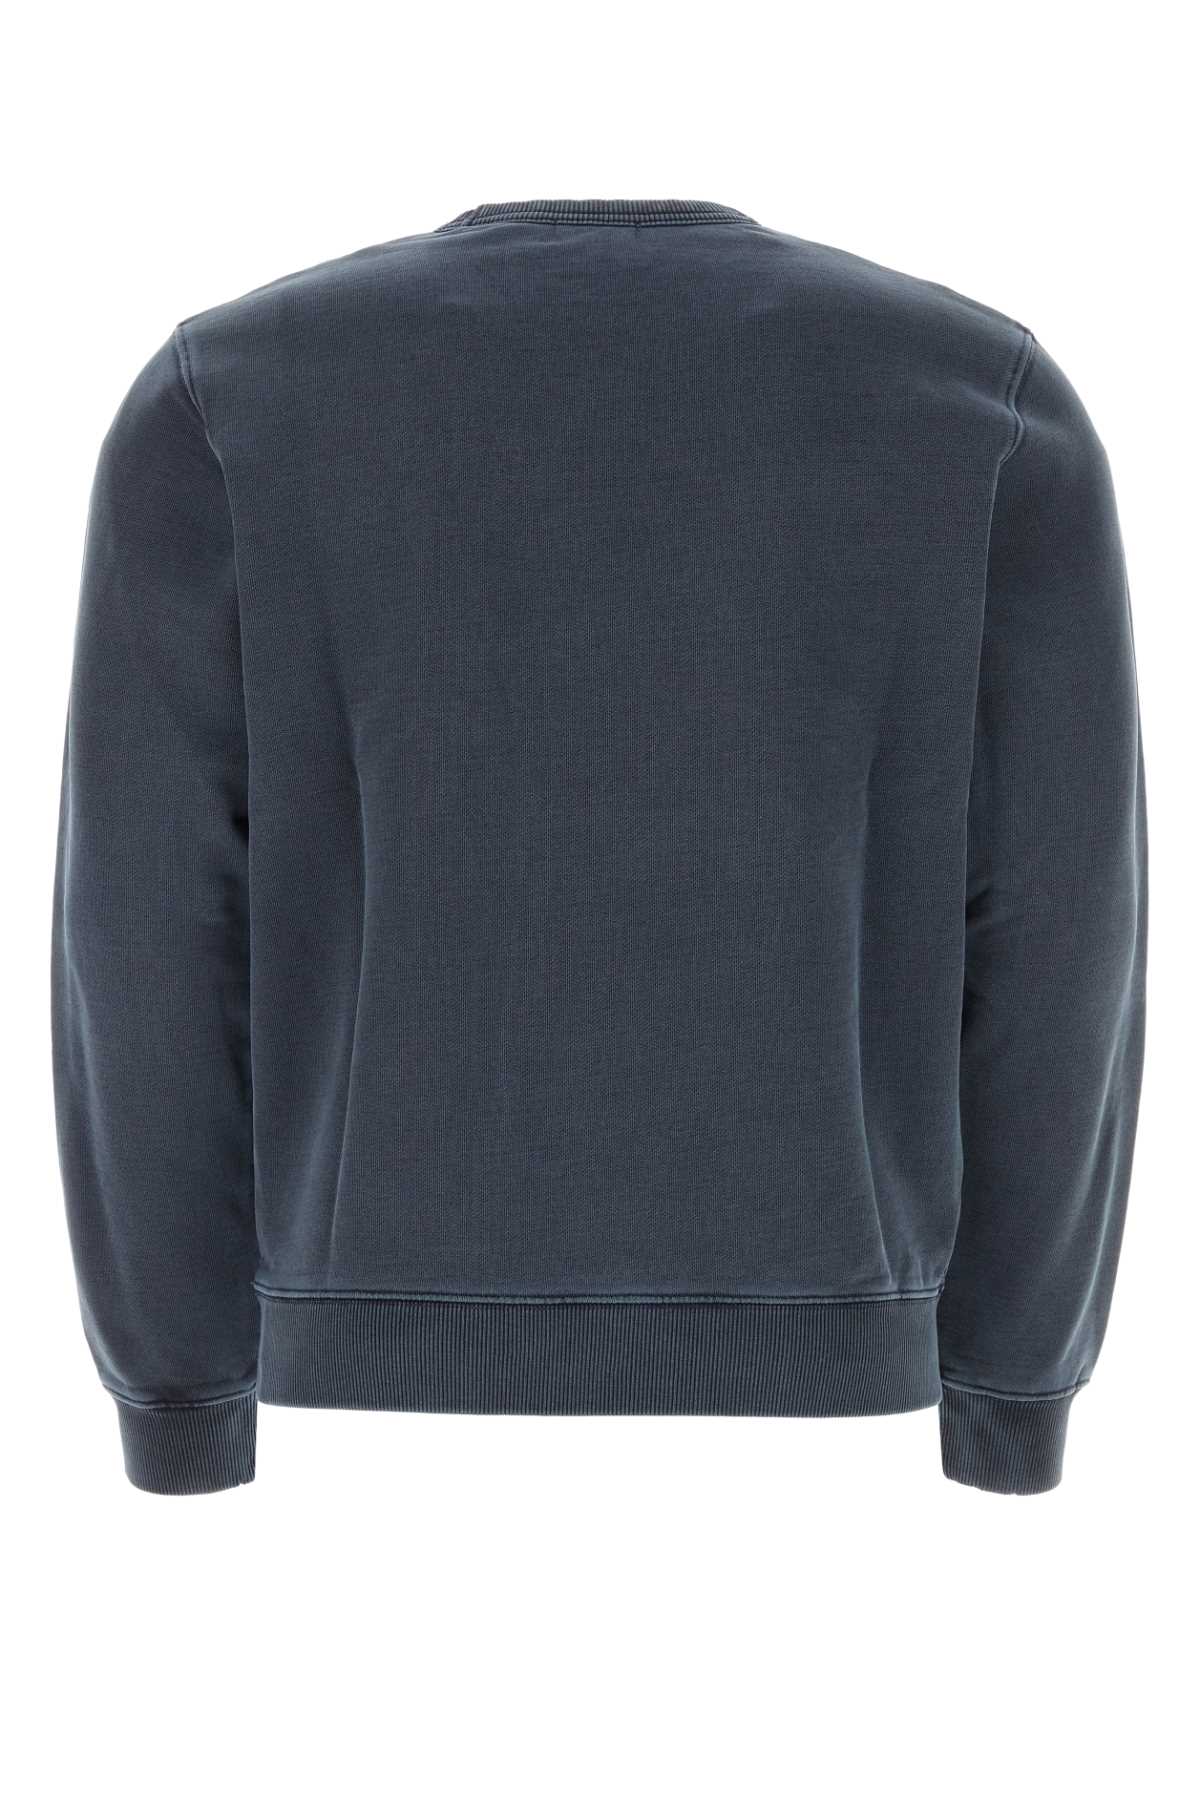 Woolrich Denim Blue Cotton Sweatshirt In 3989